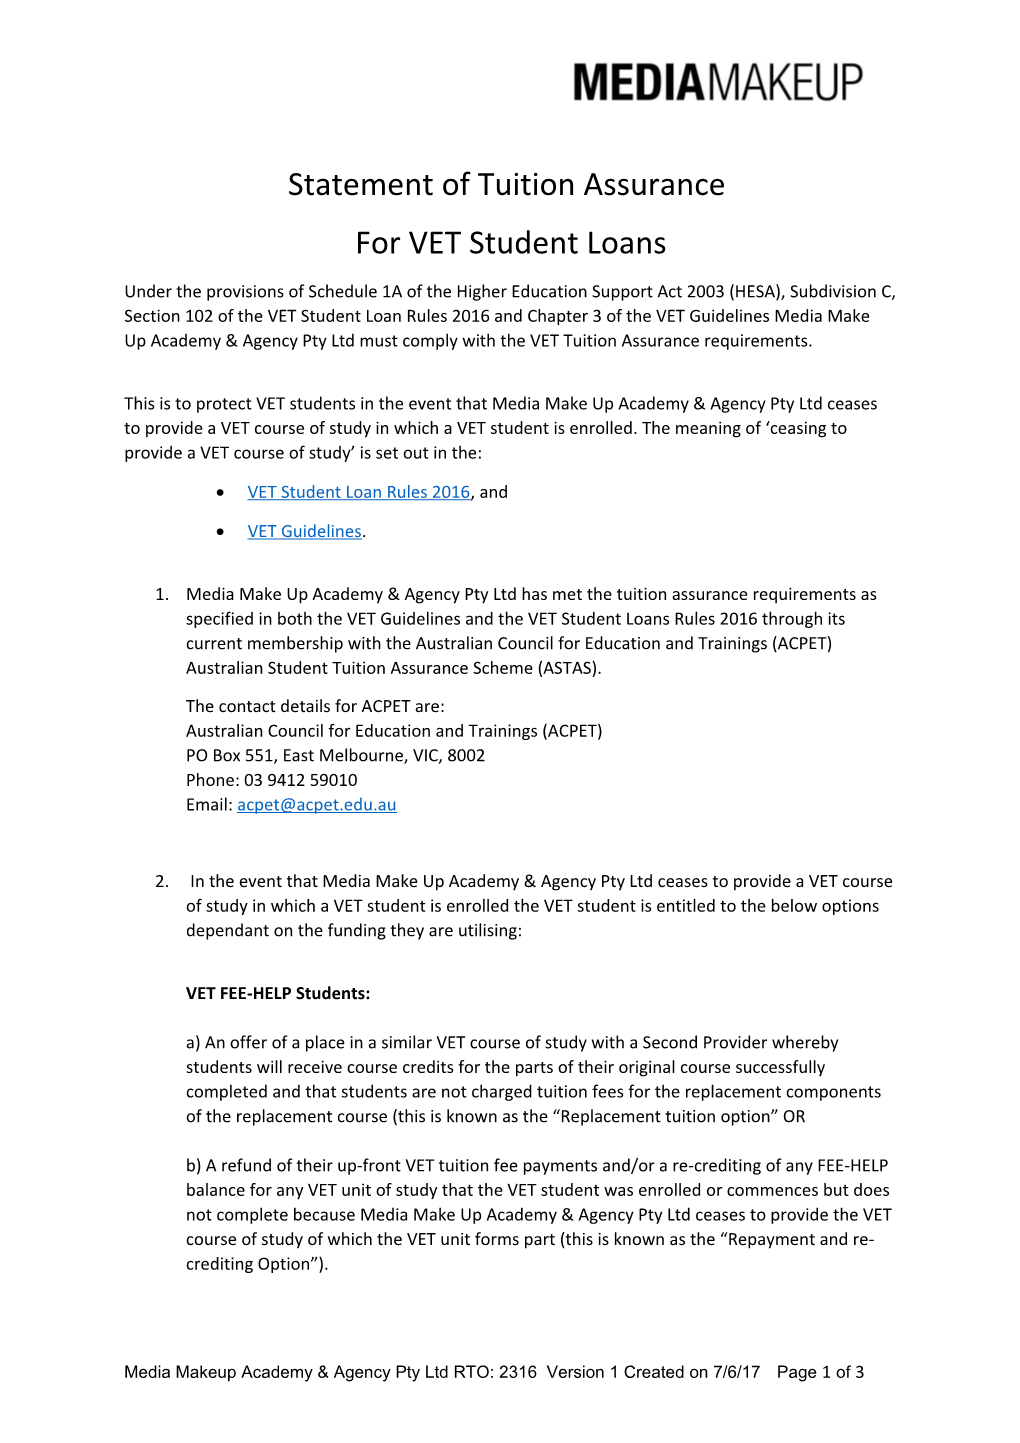 For VET Student Loans